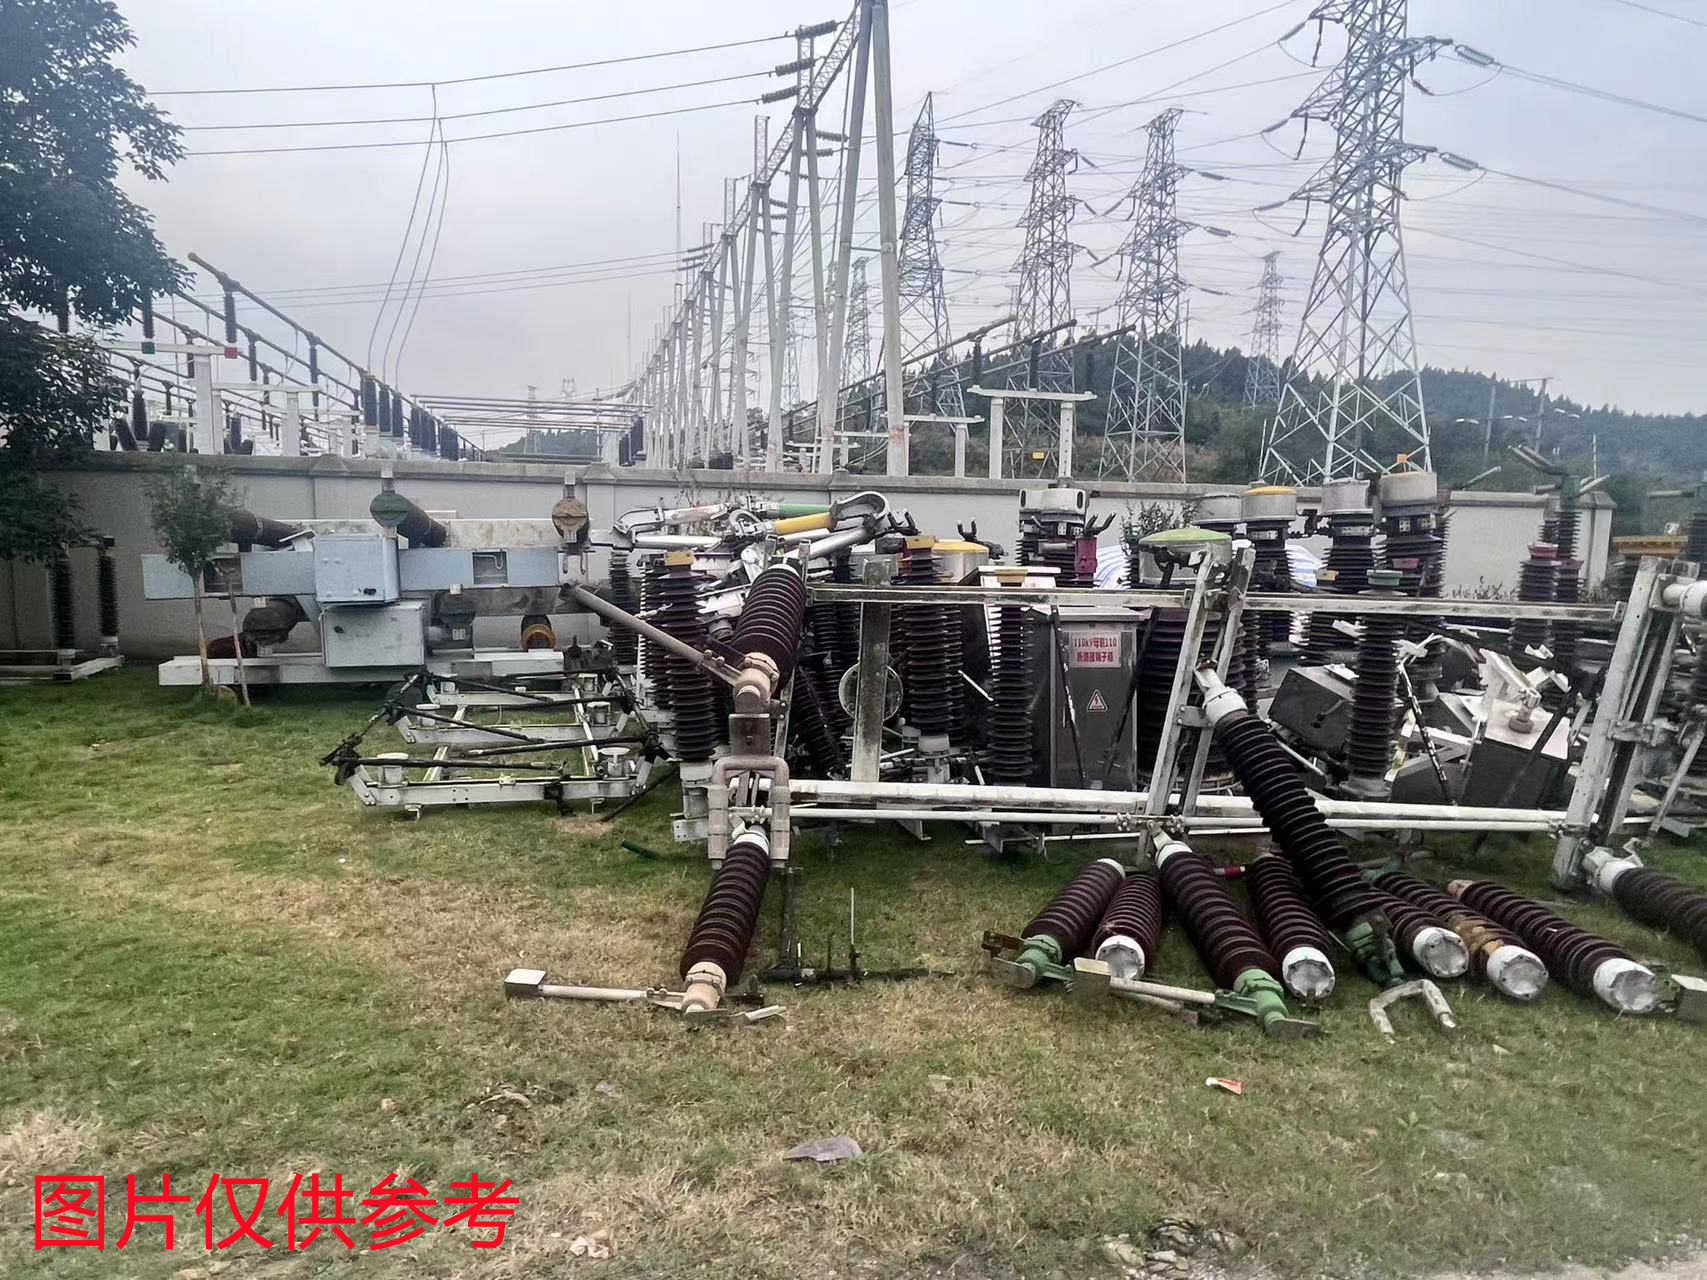 重庆涪陵电力实业公司持有的报废车辆一批出售招标